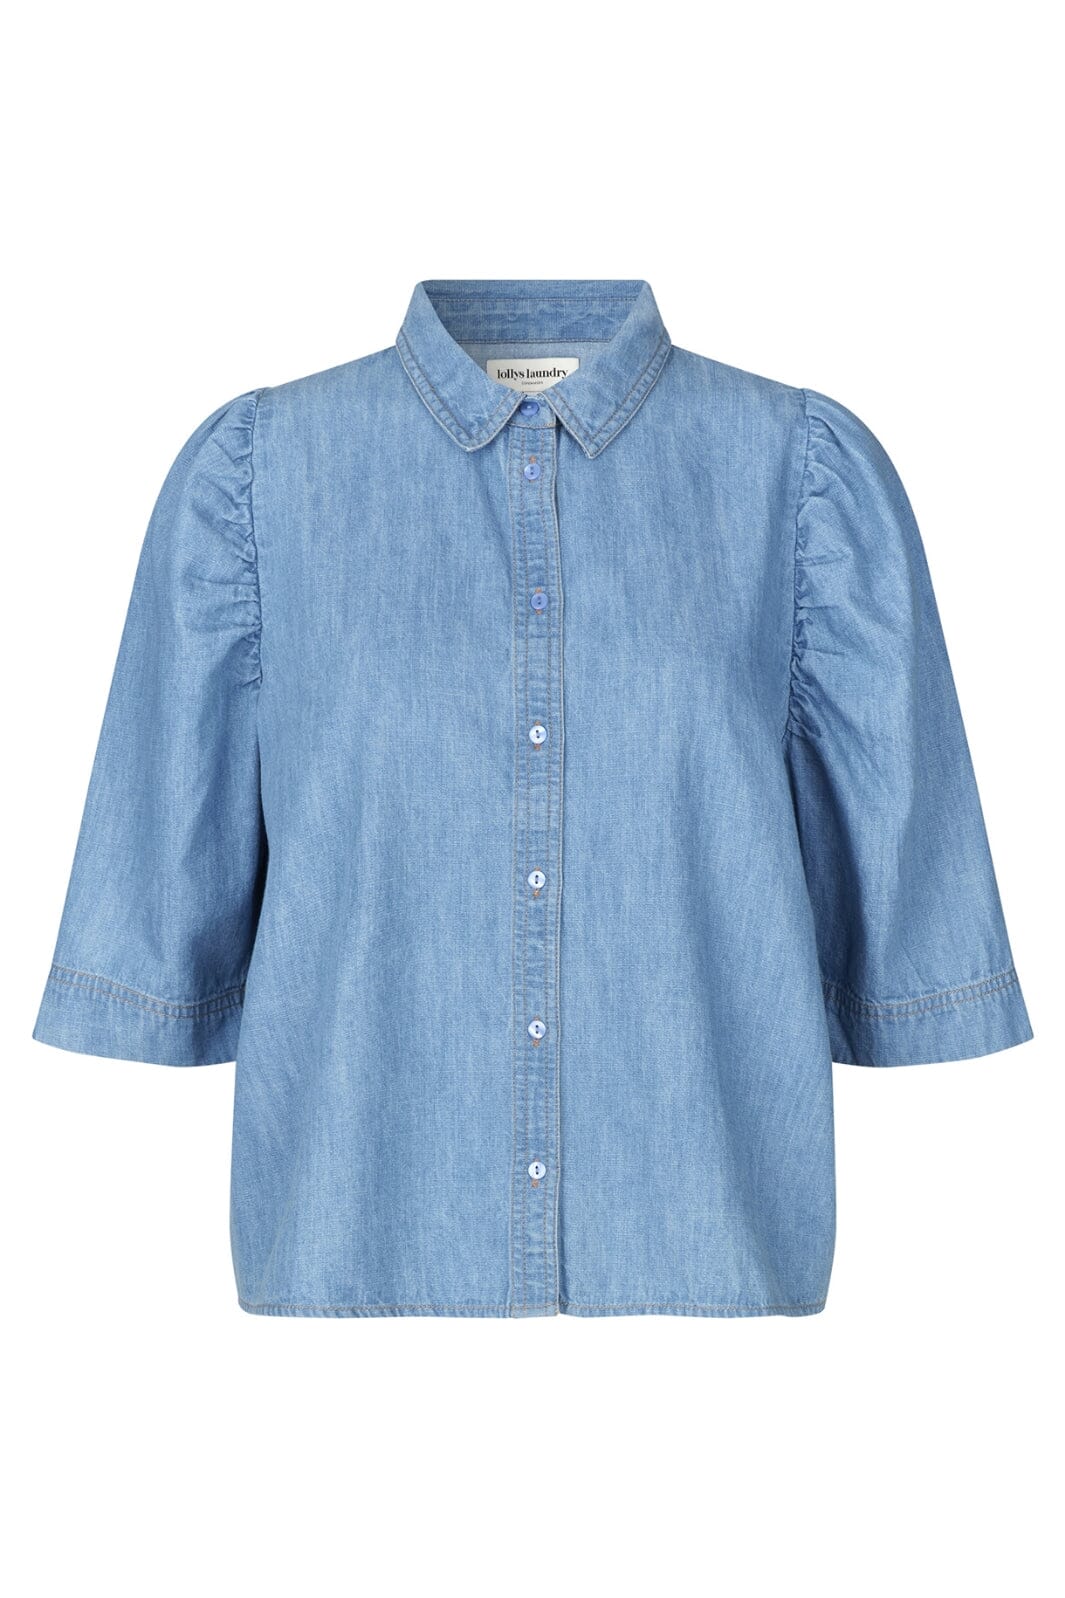 Lollys Laundry - BonoLL Shirt SS - 22 Light Blue Skjorter 